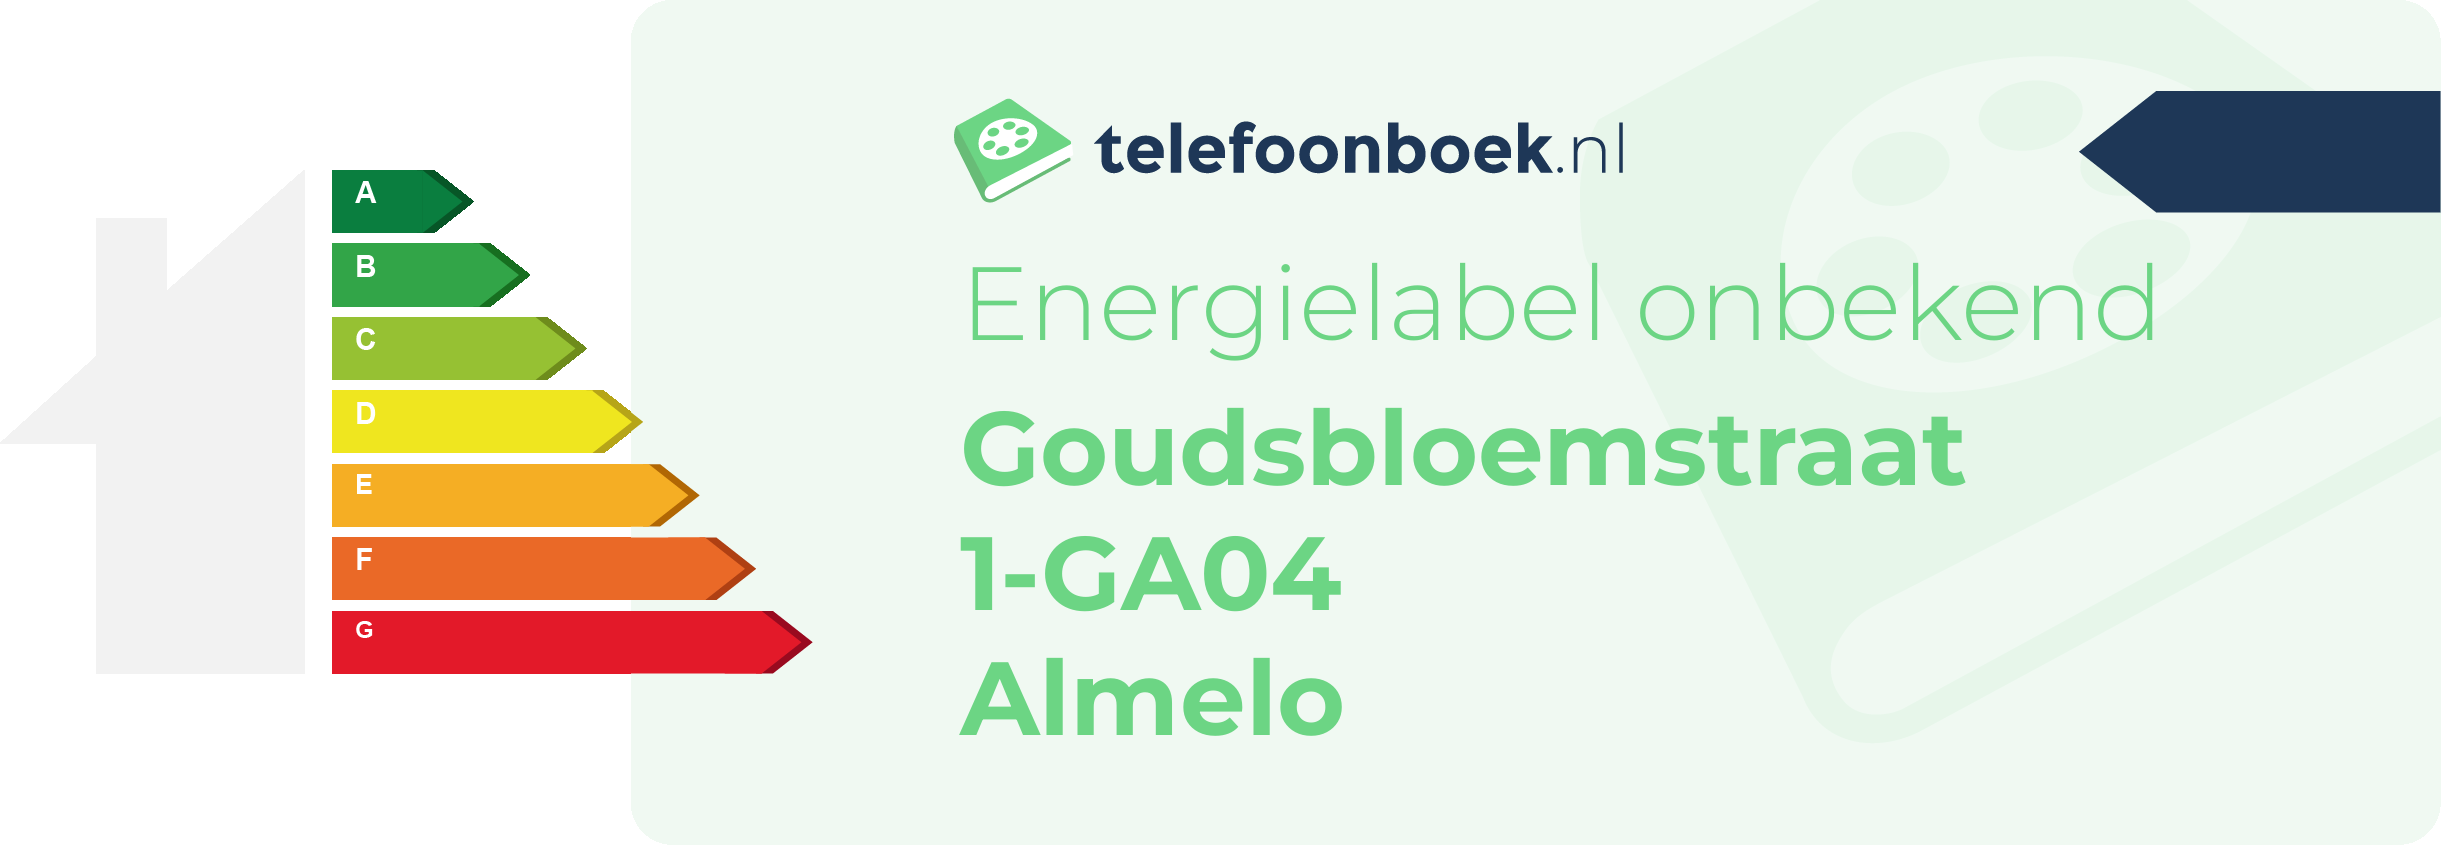 Energielabel Goudsbloemstraat 1-GA04 Almelo